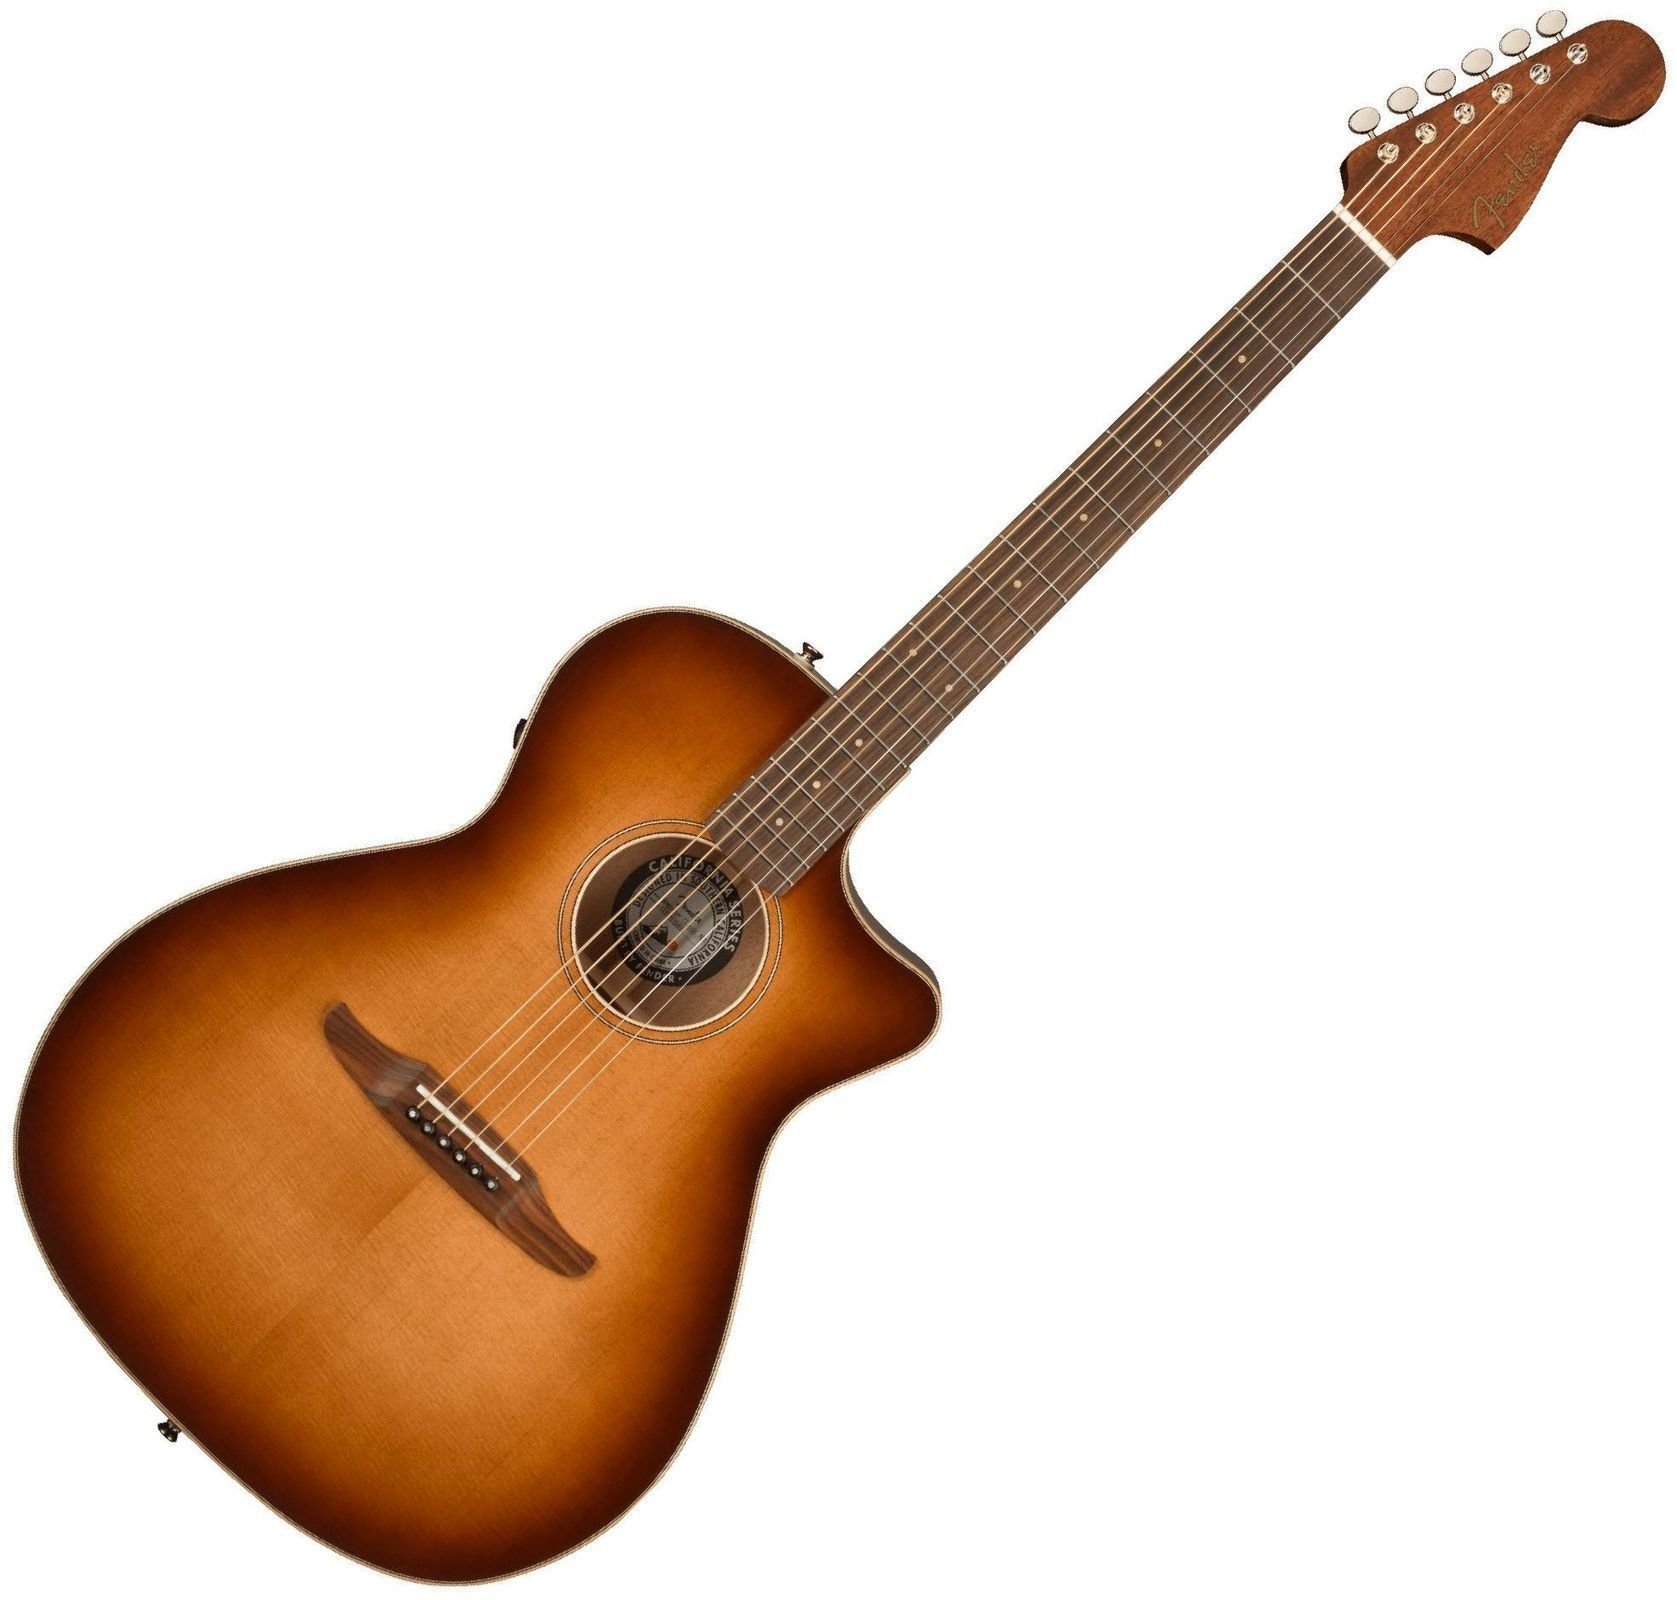 Jumbo elektro-akoestische gitaar Fender Newporter Classic Aged Cognac Burst